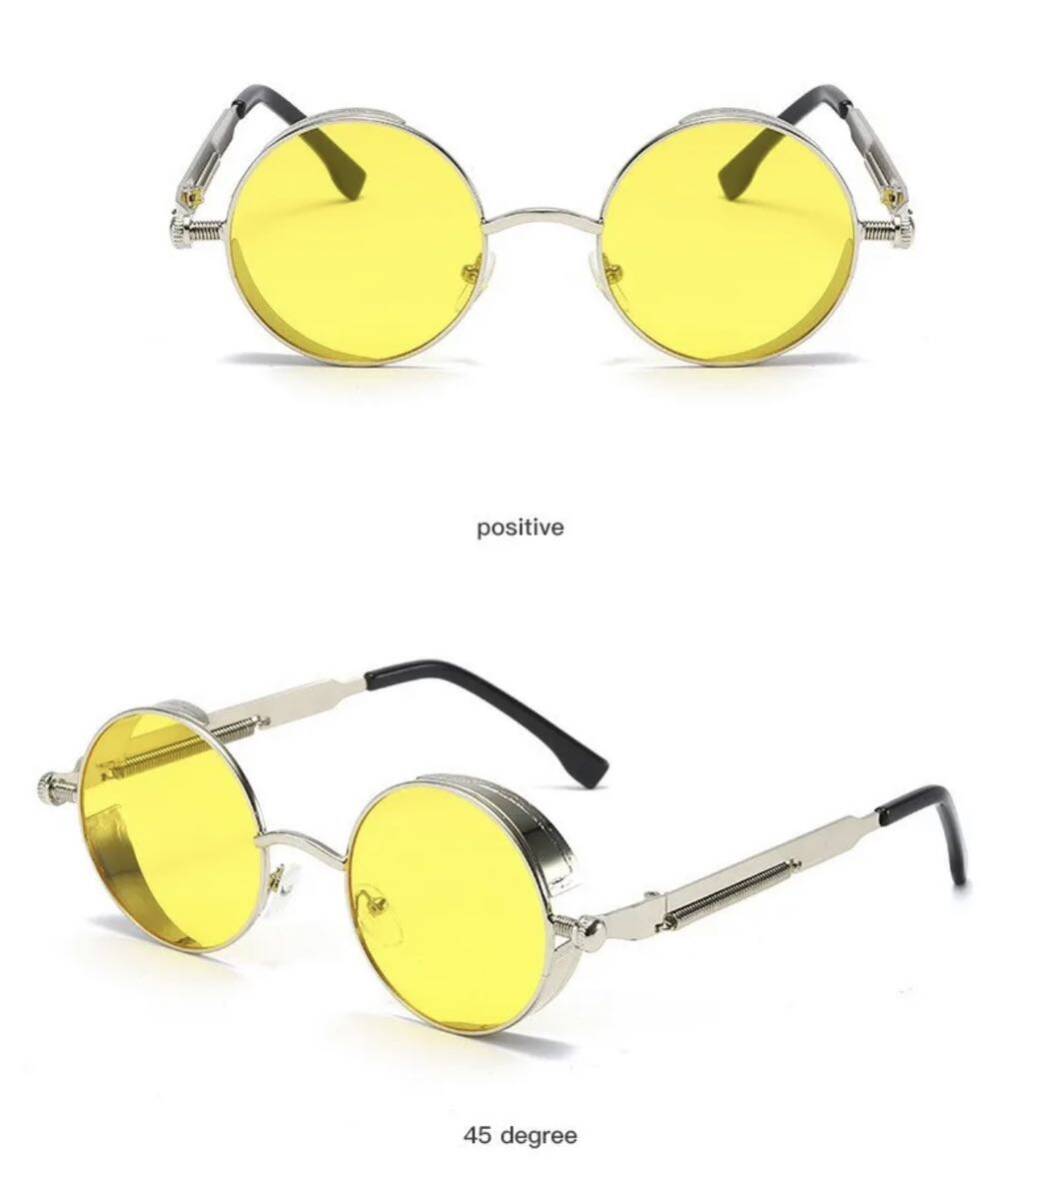 メタルパンクサングラス メガネ 眼鏡 ユニセックス ファッション サングラス メタル パンク スチームパンク 丸眼鏡 丸メガネ 黄 銀 2844_画像2